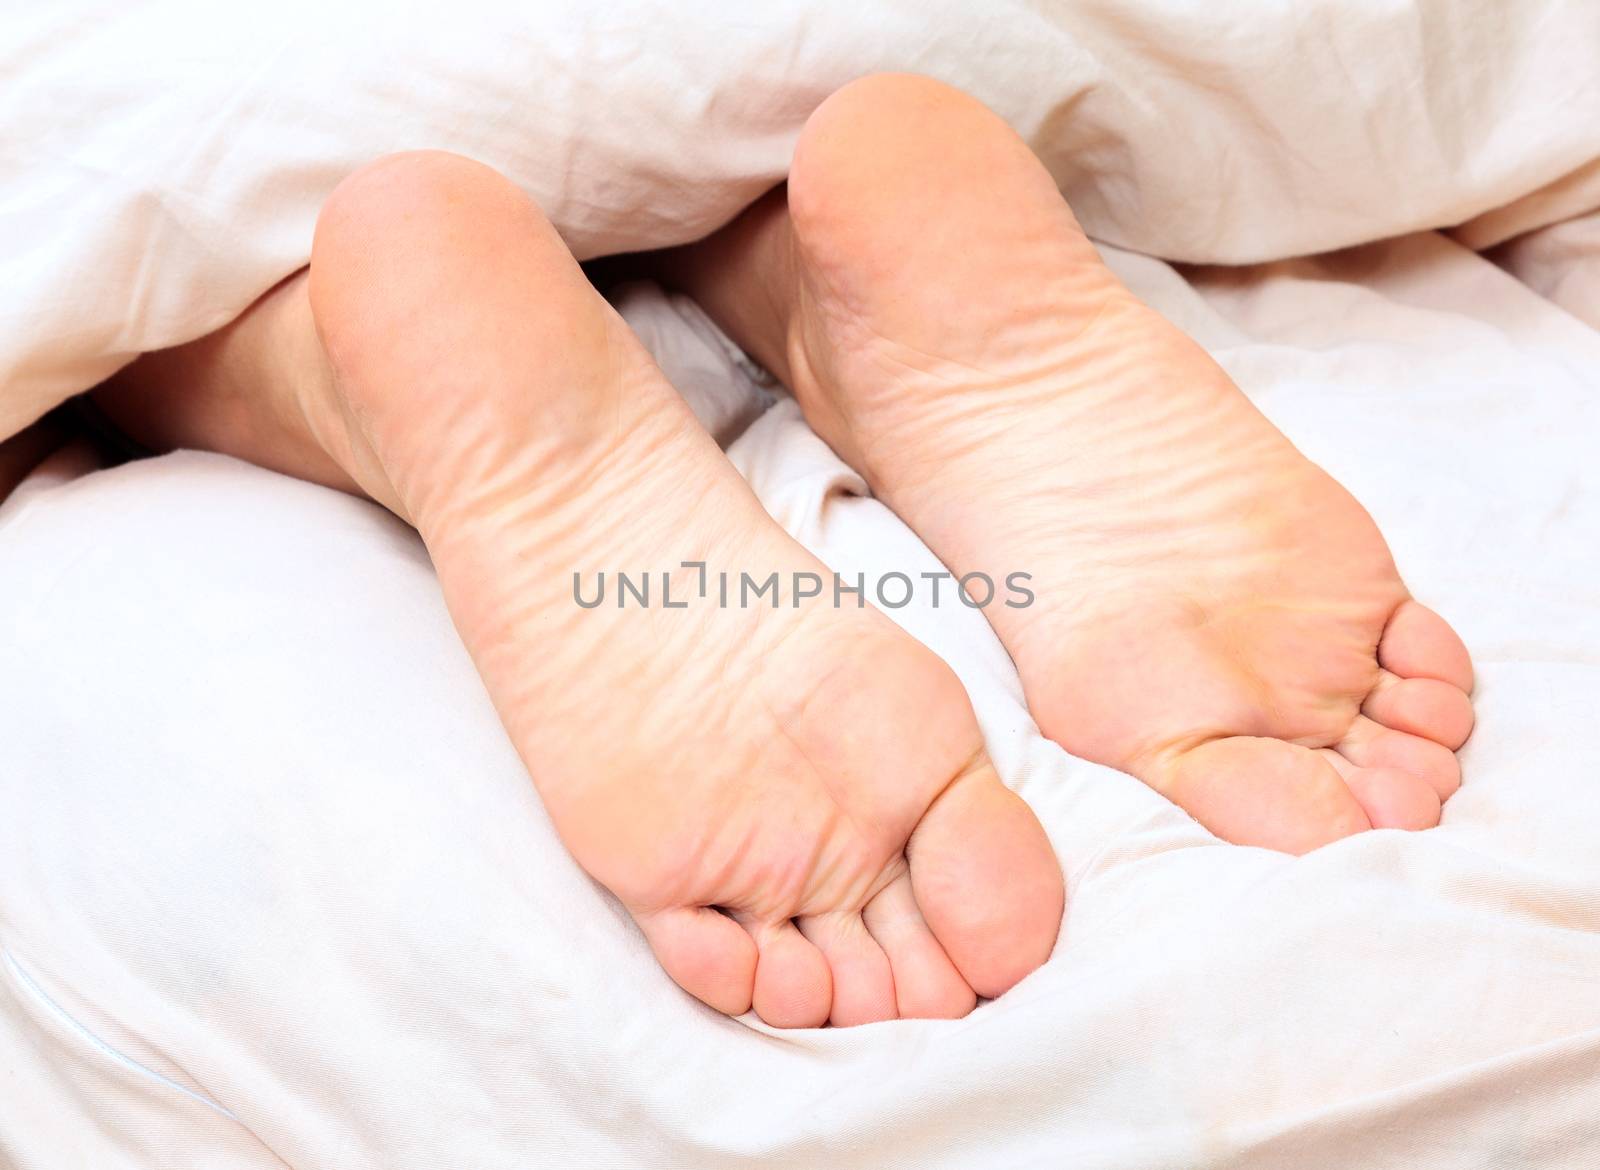 Female bare feet under the blanket